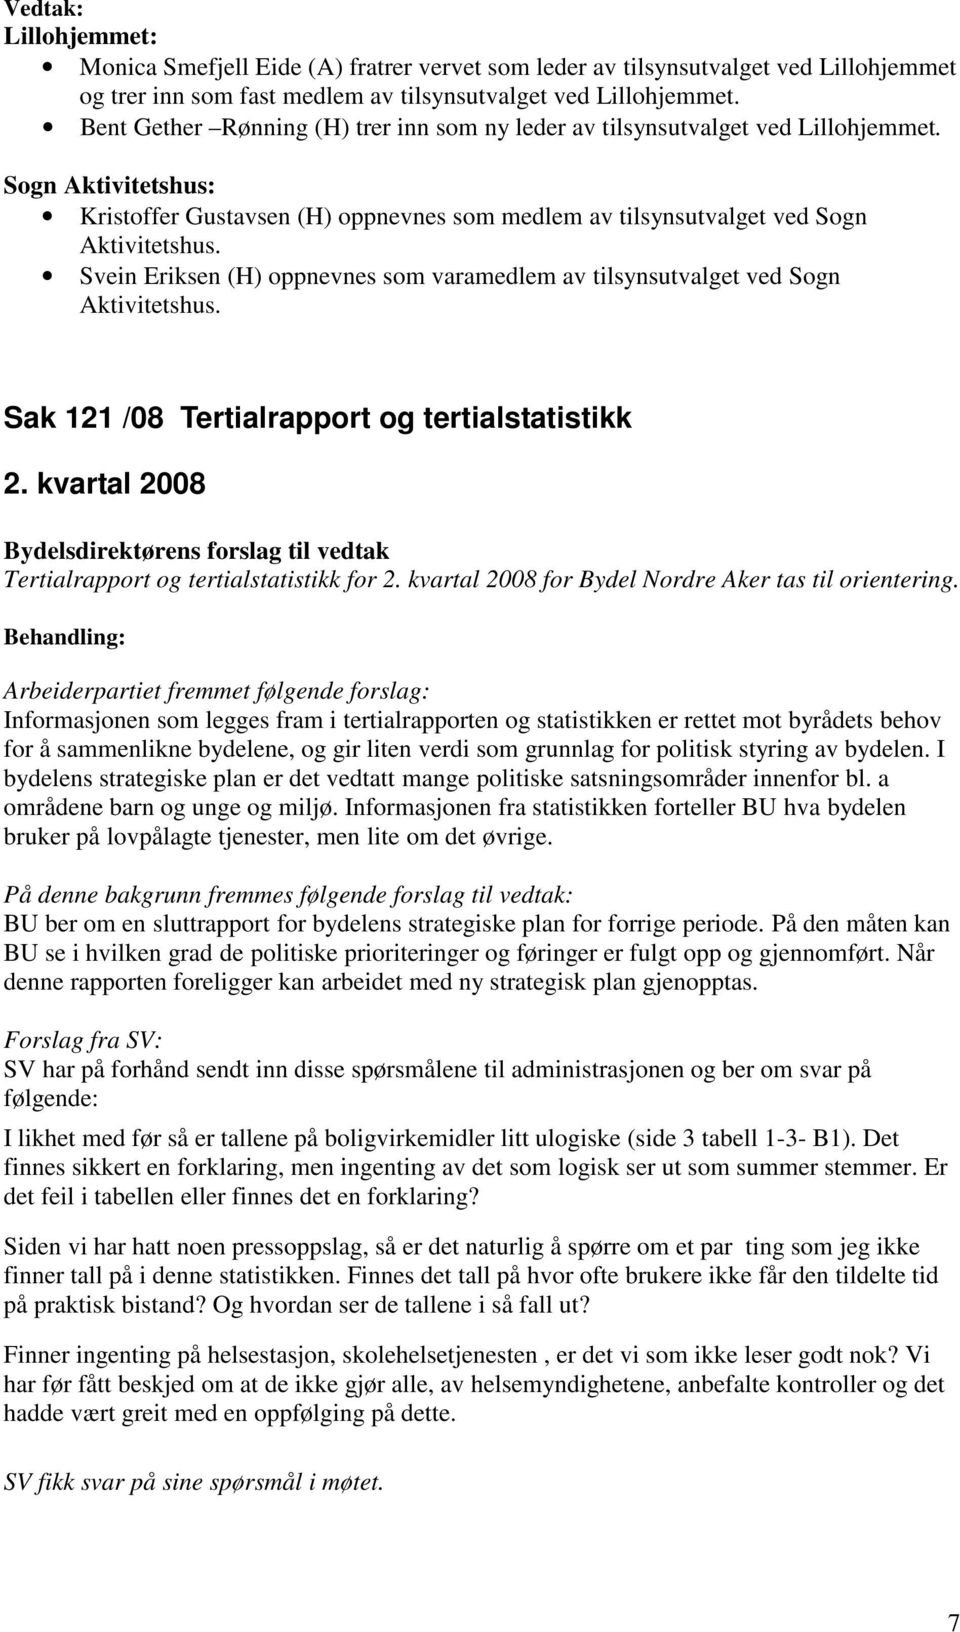 Svein Eriksen (H) oppnevnes som varamedlem av tilsynsutvalget ved Sogn Aktivitetshus. Sak 121 /08 Tertialrapport og tertialstatistikk 2. kvartal 2008 Tertialrapport og tertialstatistikk for 2.